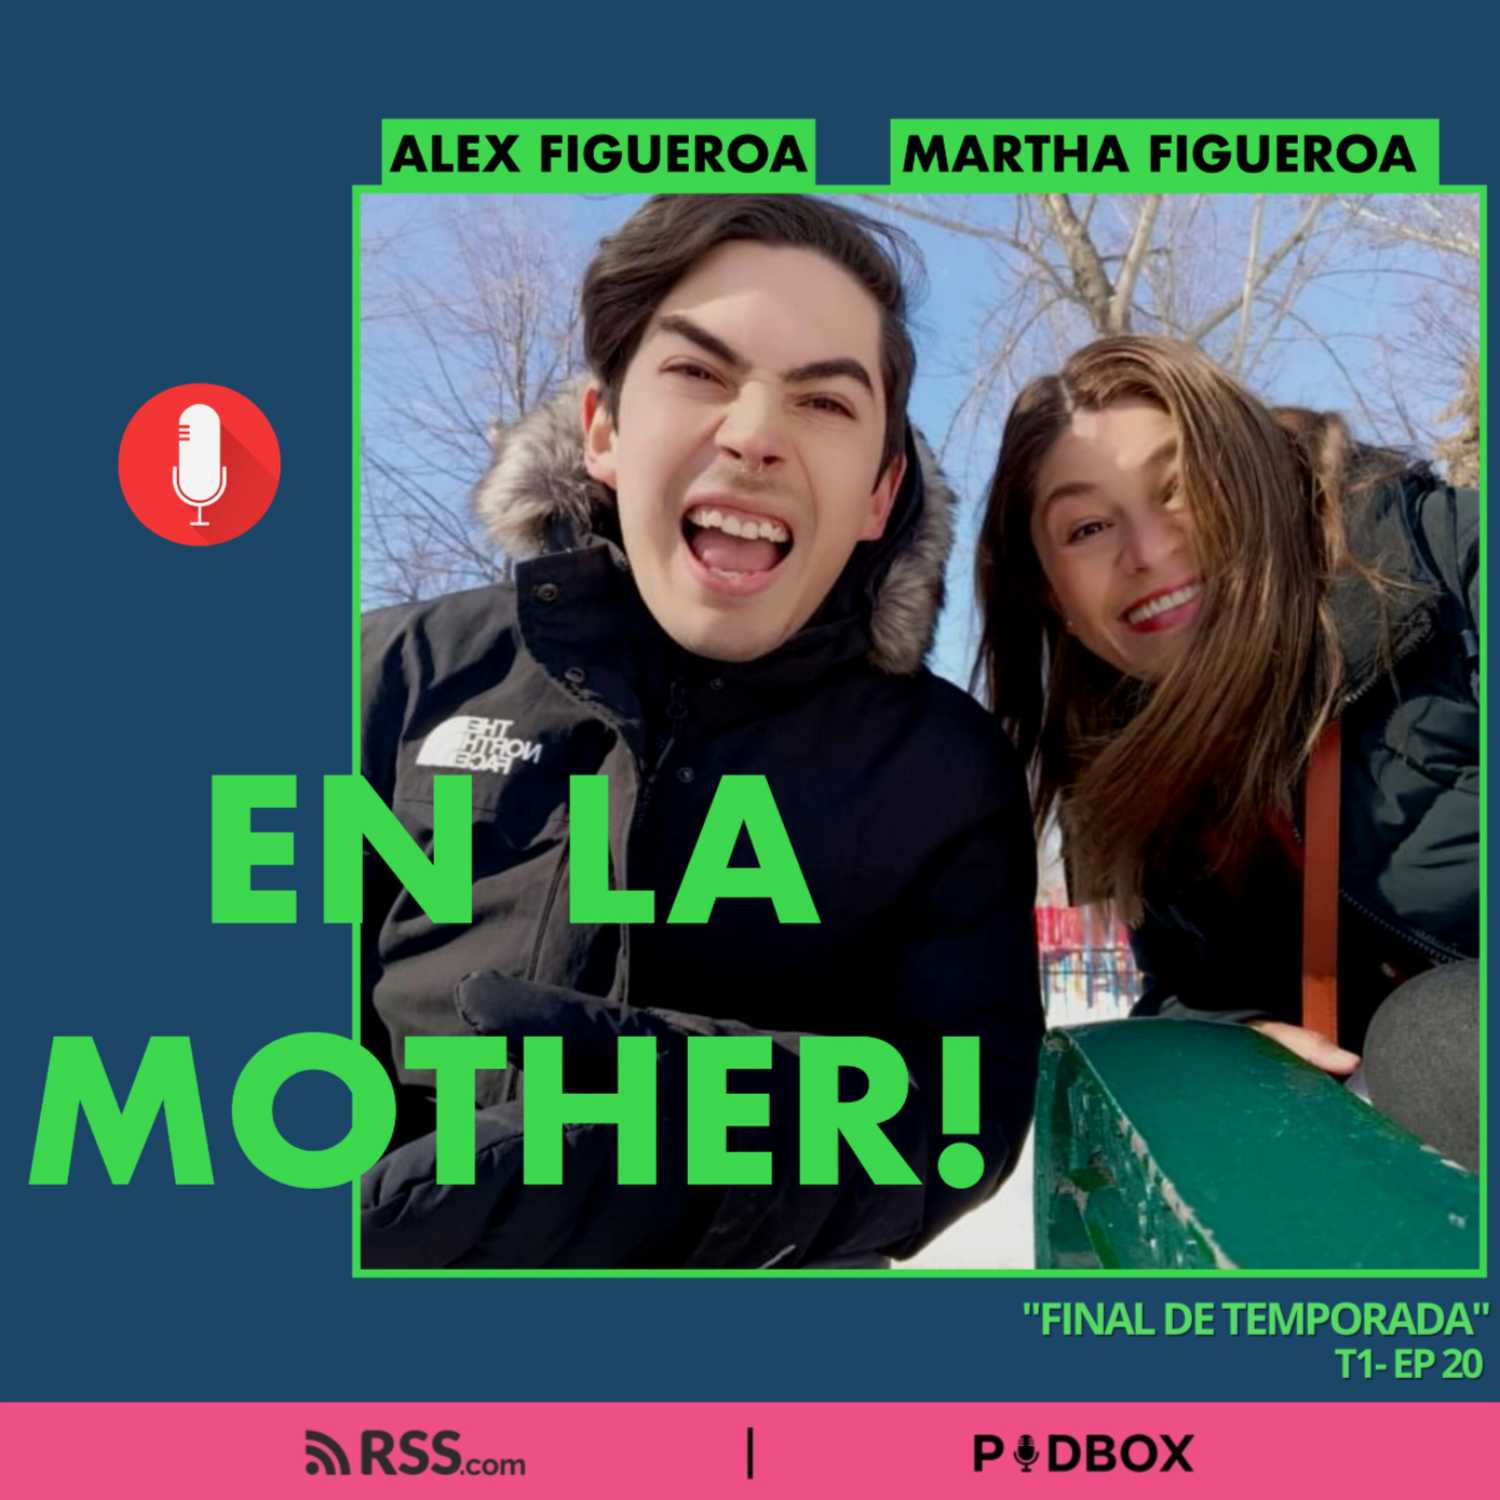 EN LA MOTHER! - T1 - EP 20 -  "FINAL DE TEMPORADA"